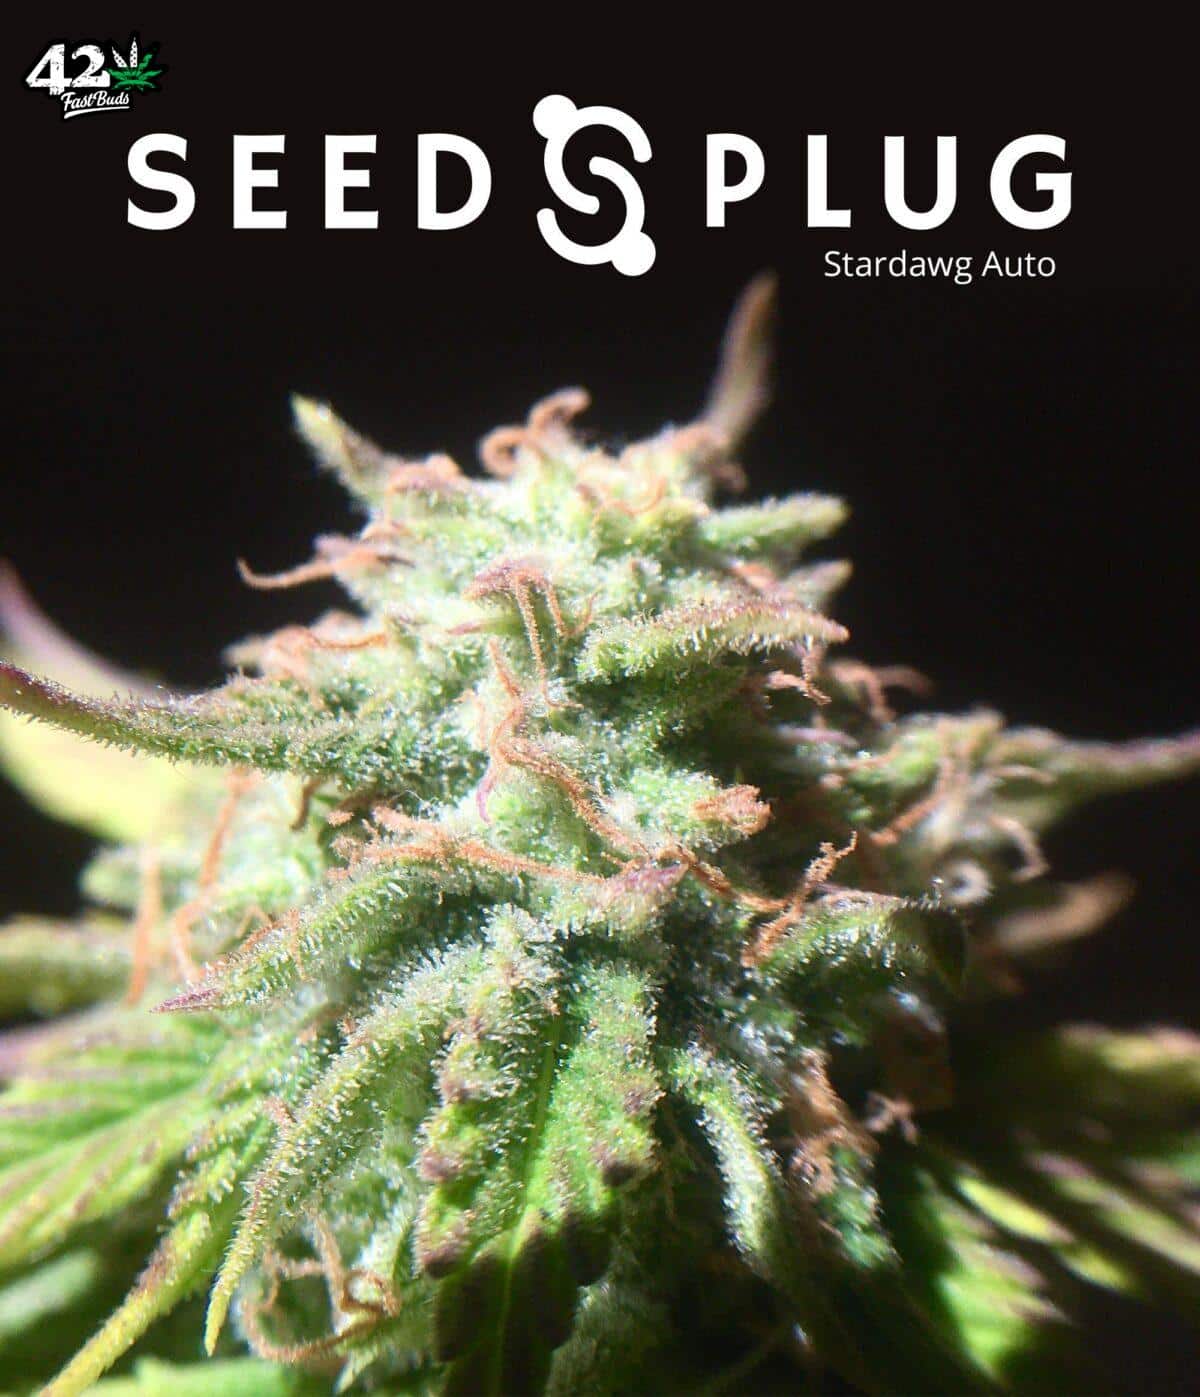 Stardawg Auto | SeedsPlug